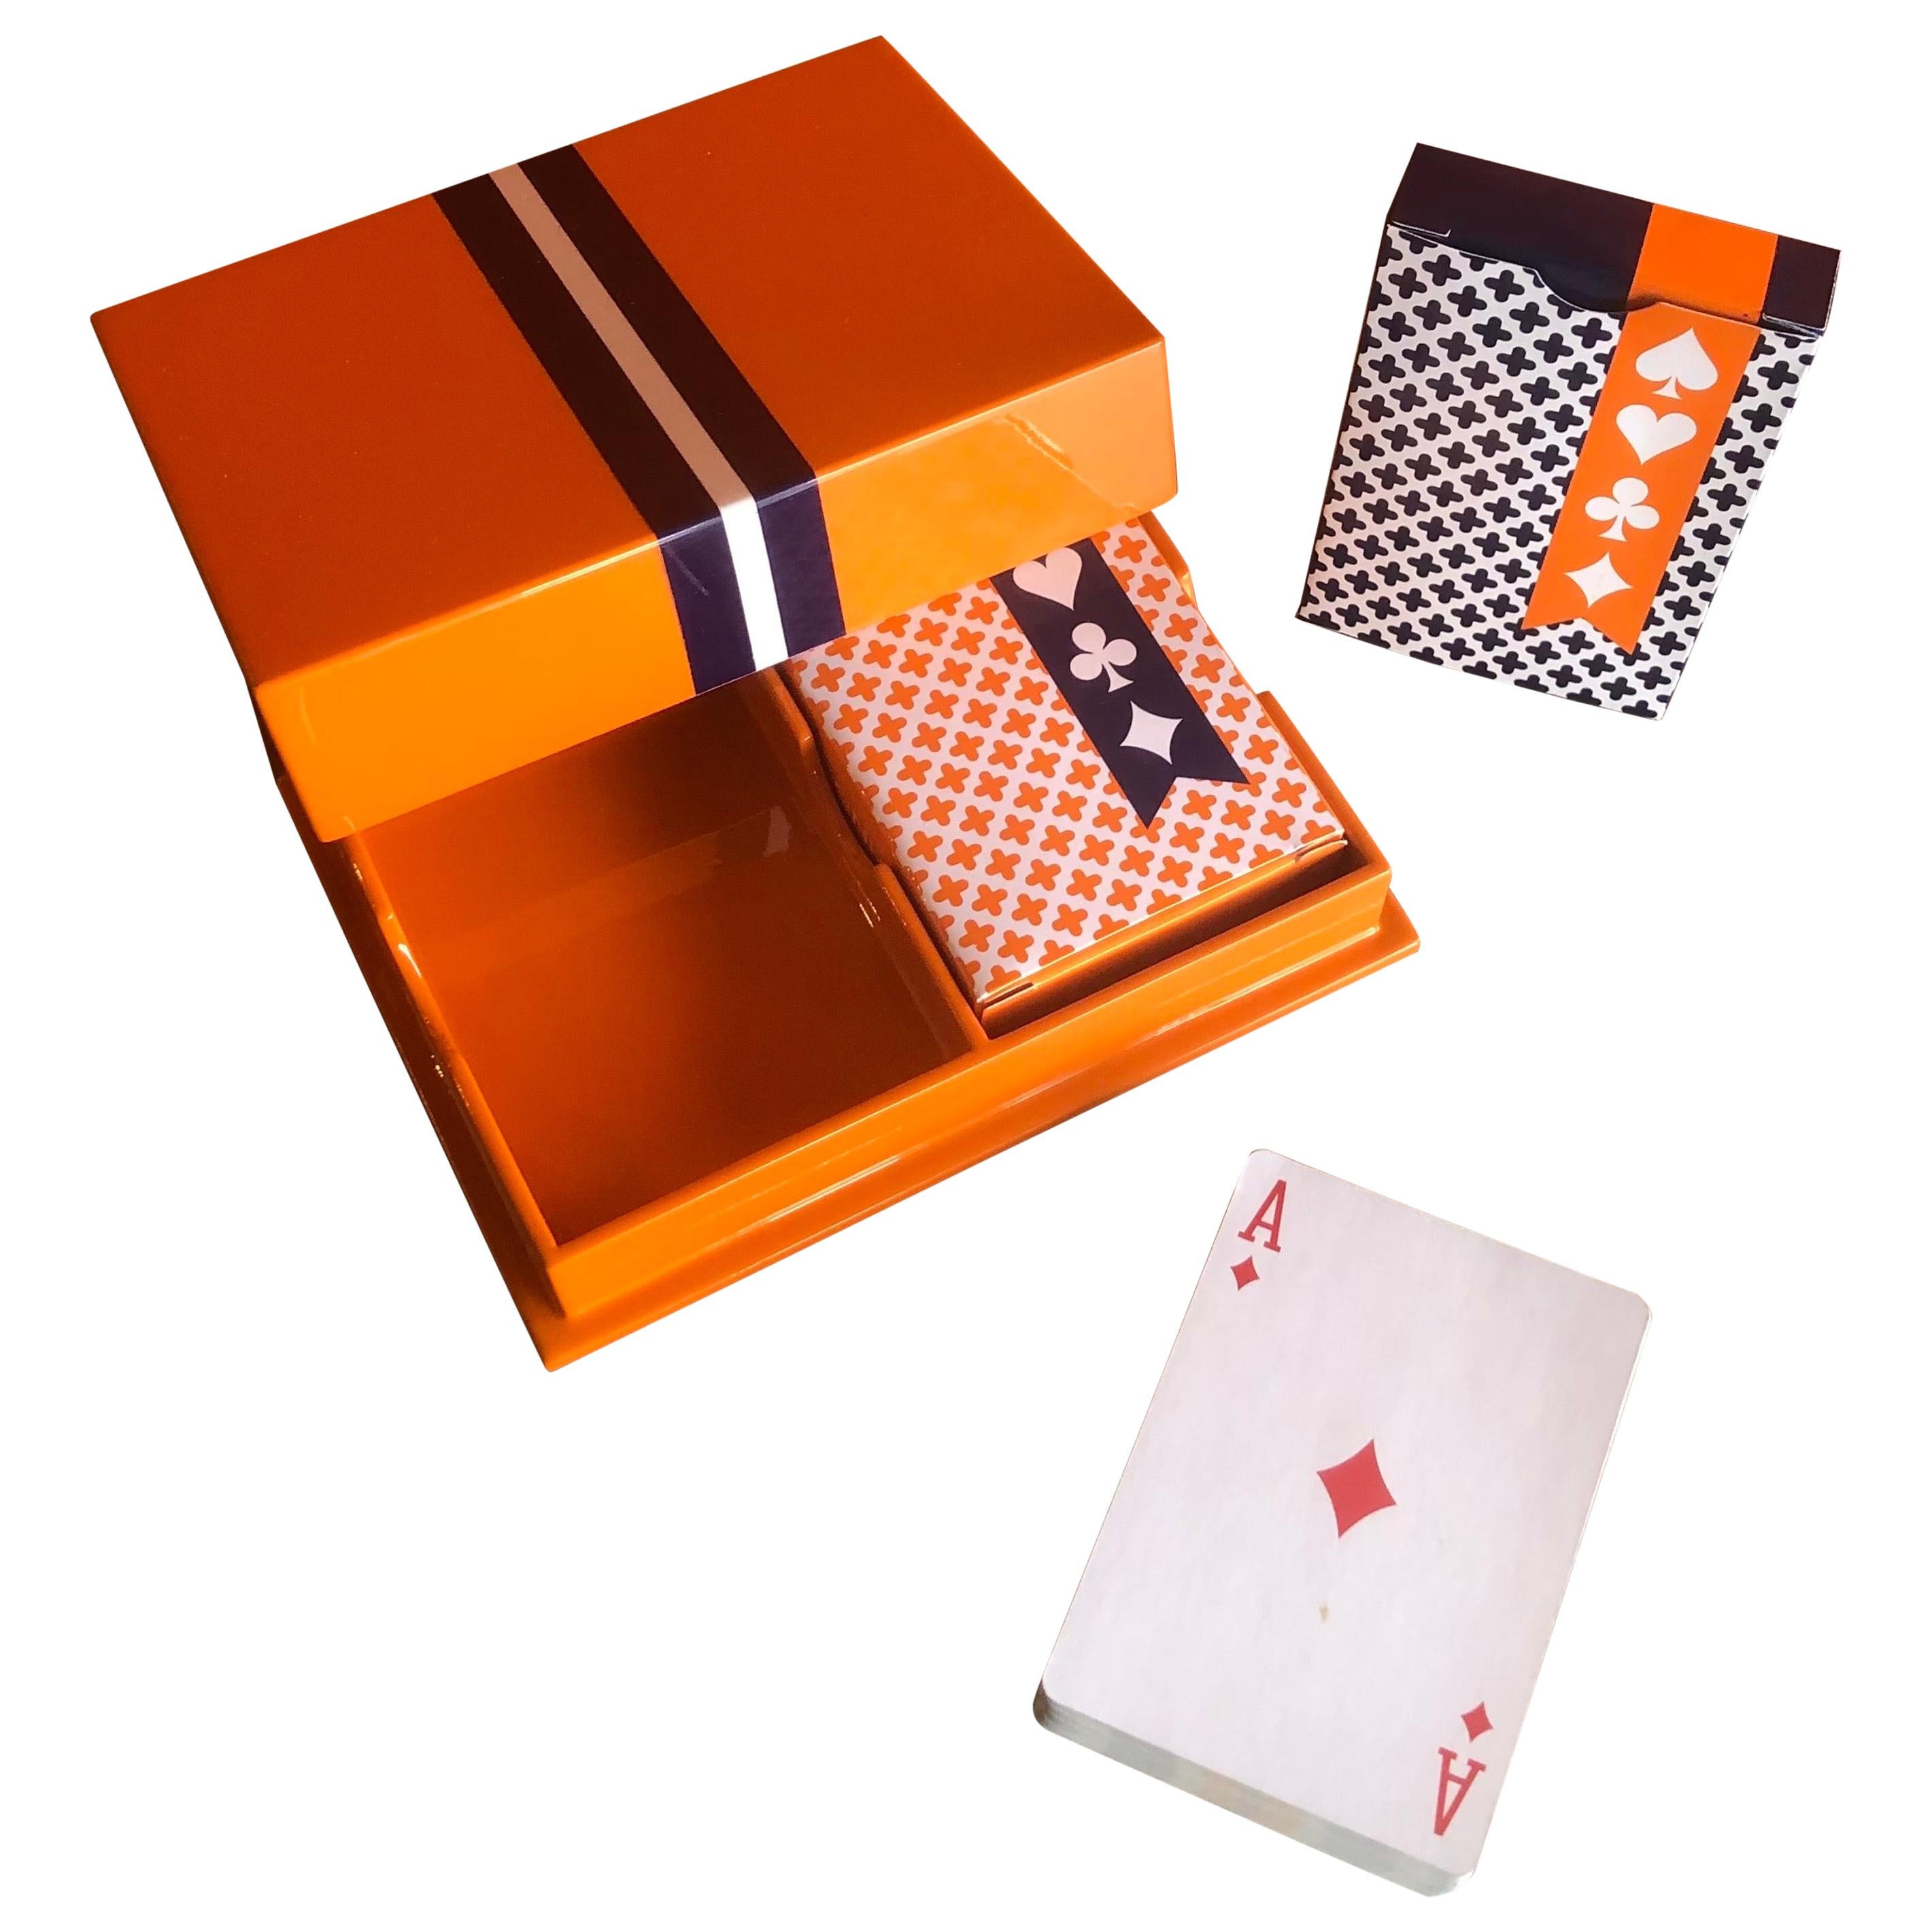 Spielkarten-Set in Karton von Jonathan Adler